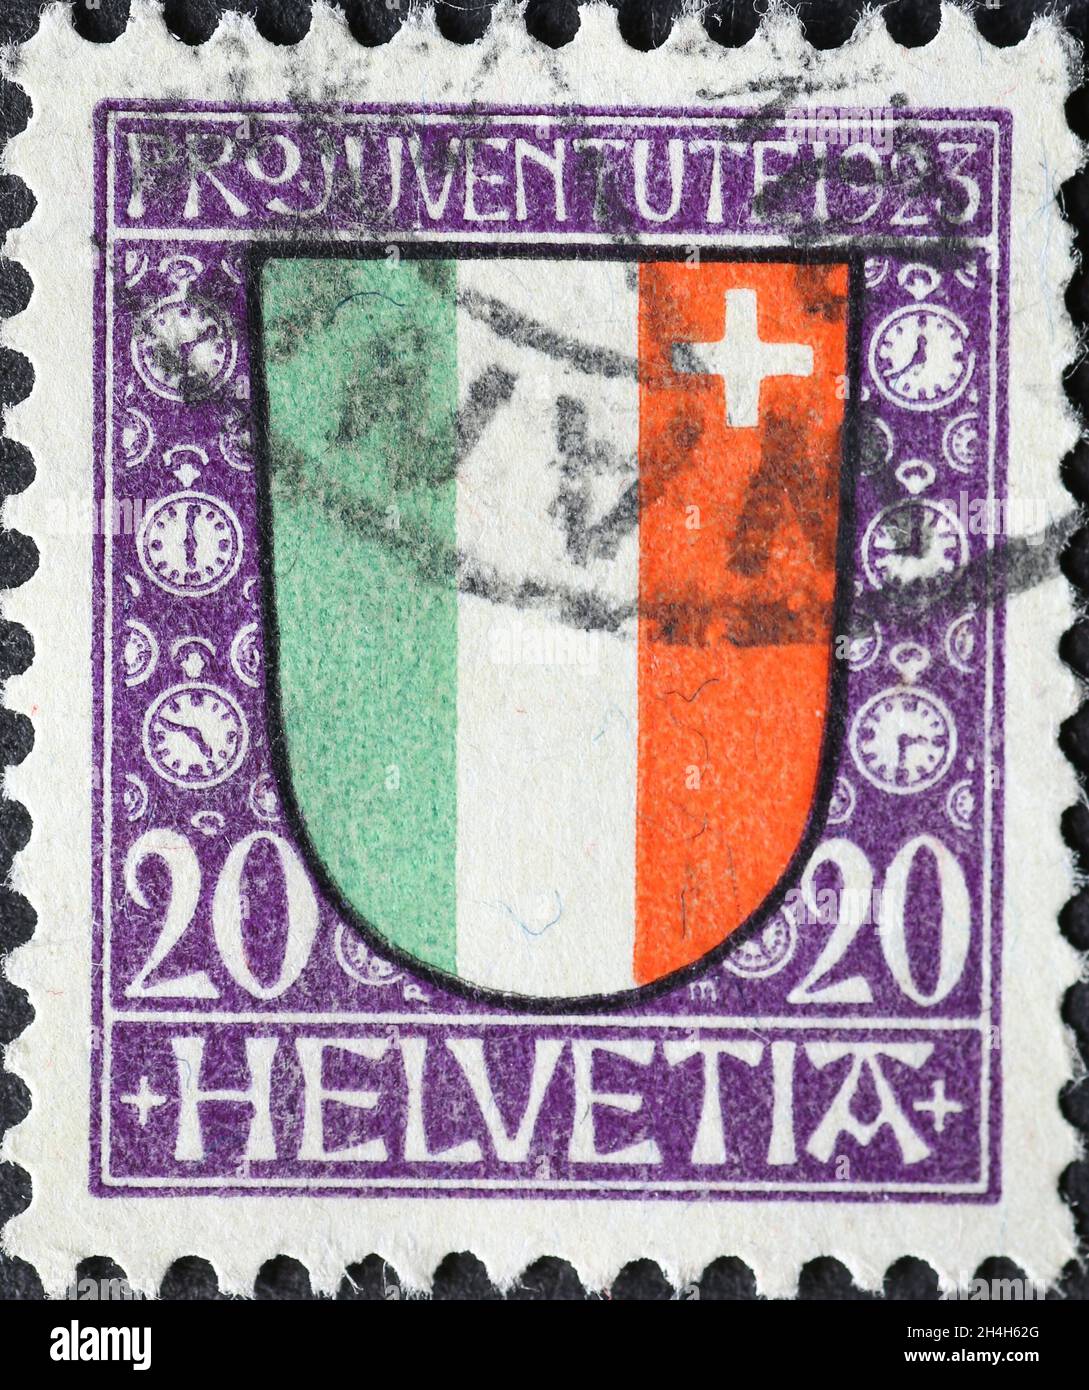 Suisse - Circa 1923: Timbre-poste imprimé en Suisse avec une blason rouge vert et blanc et une croix blanche du canton suisse de Banque D'Images